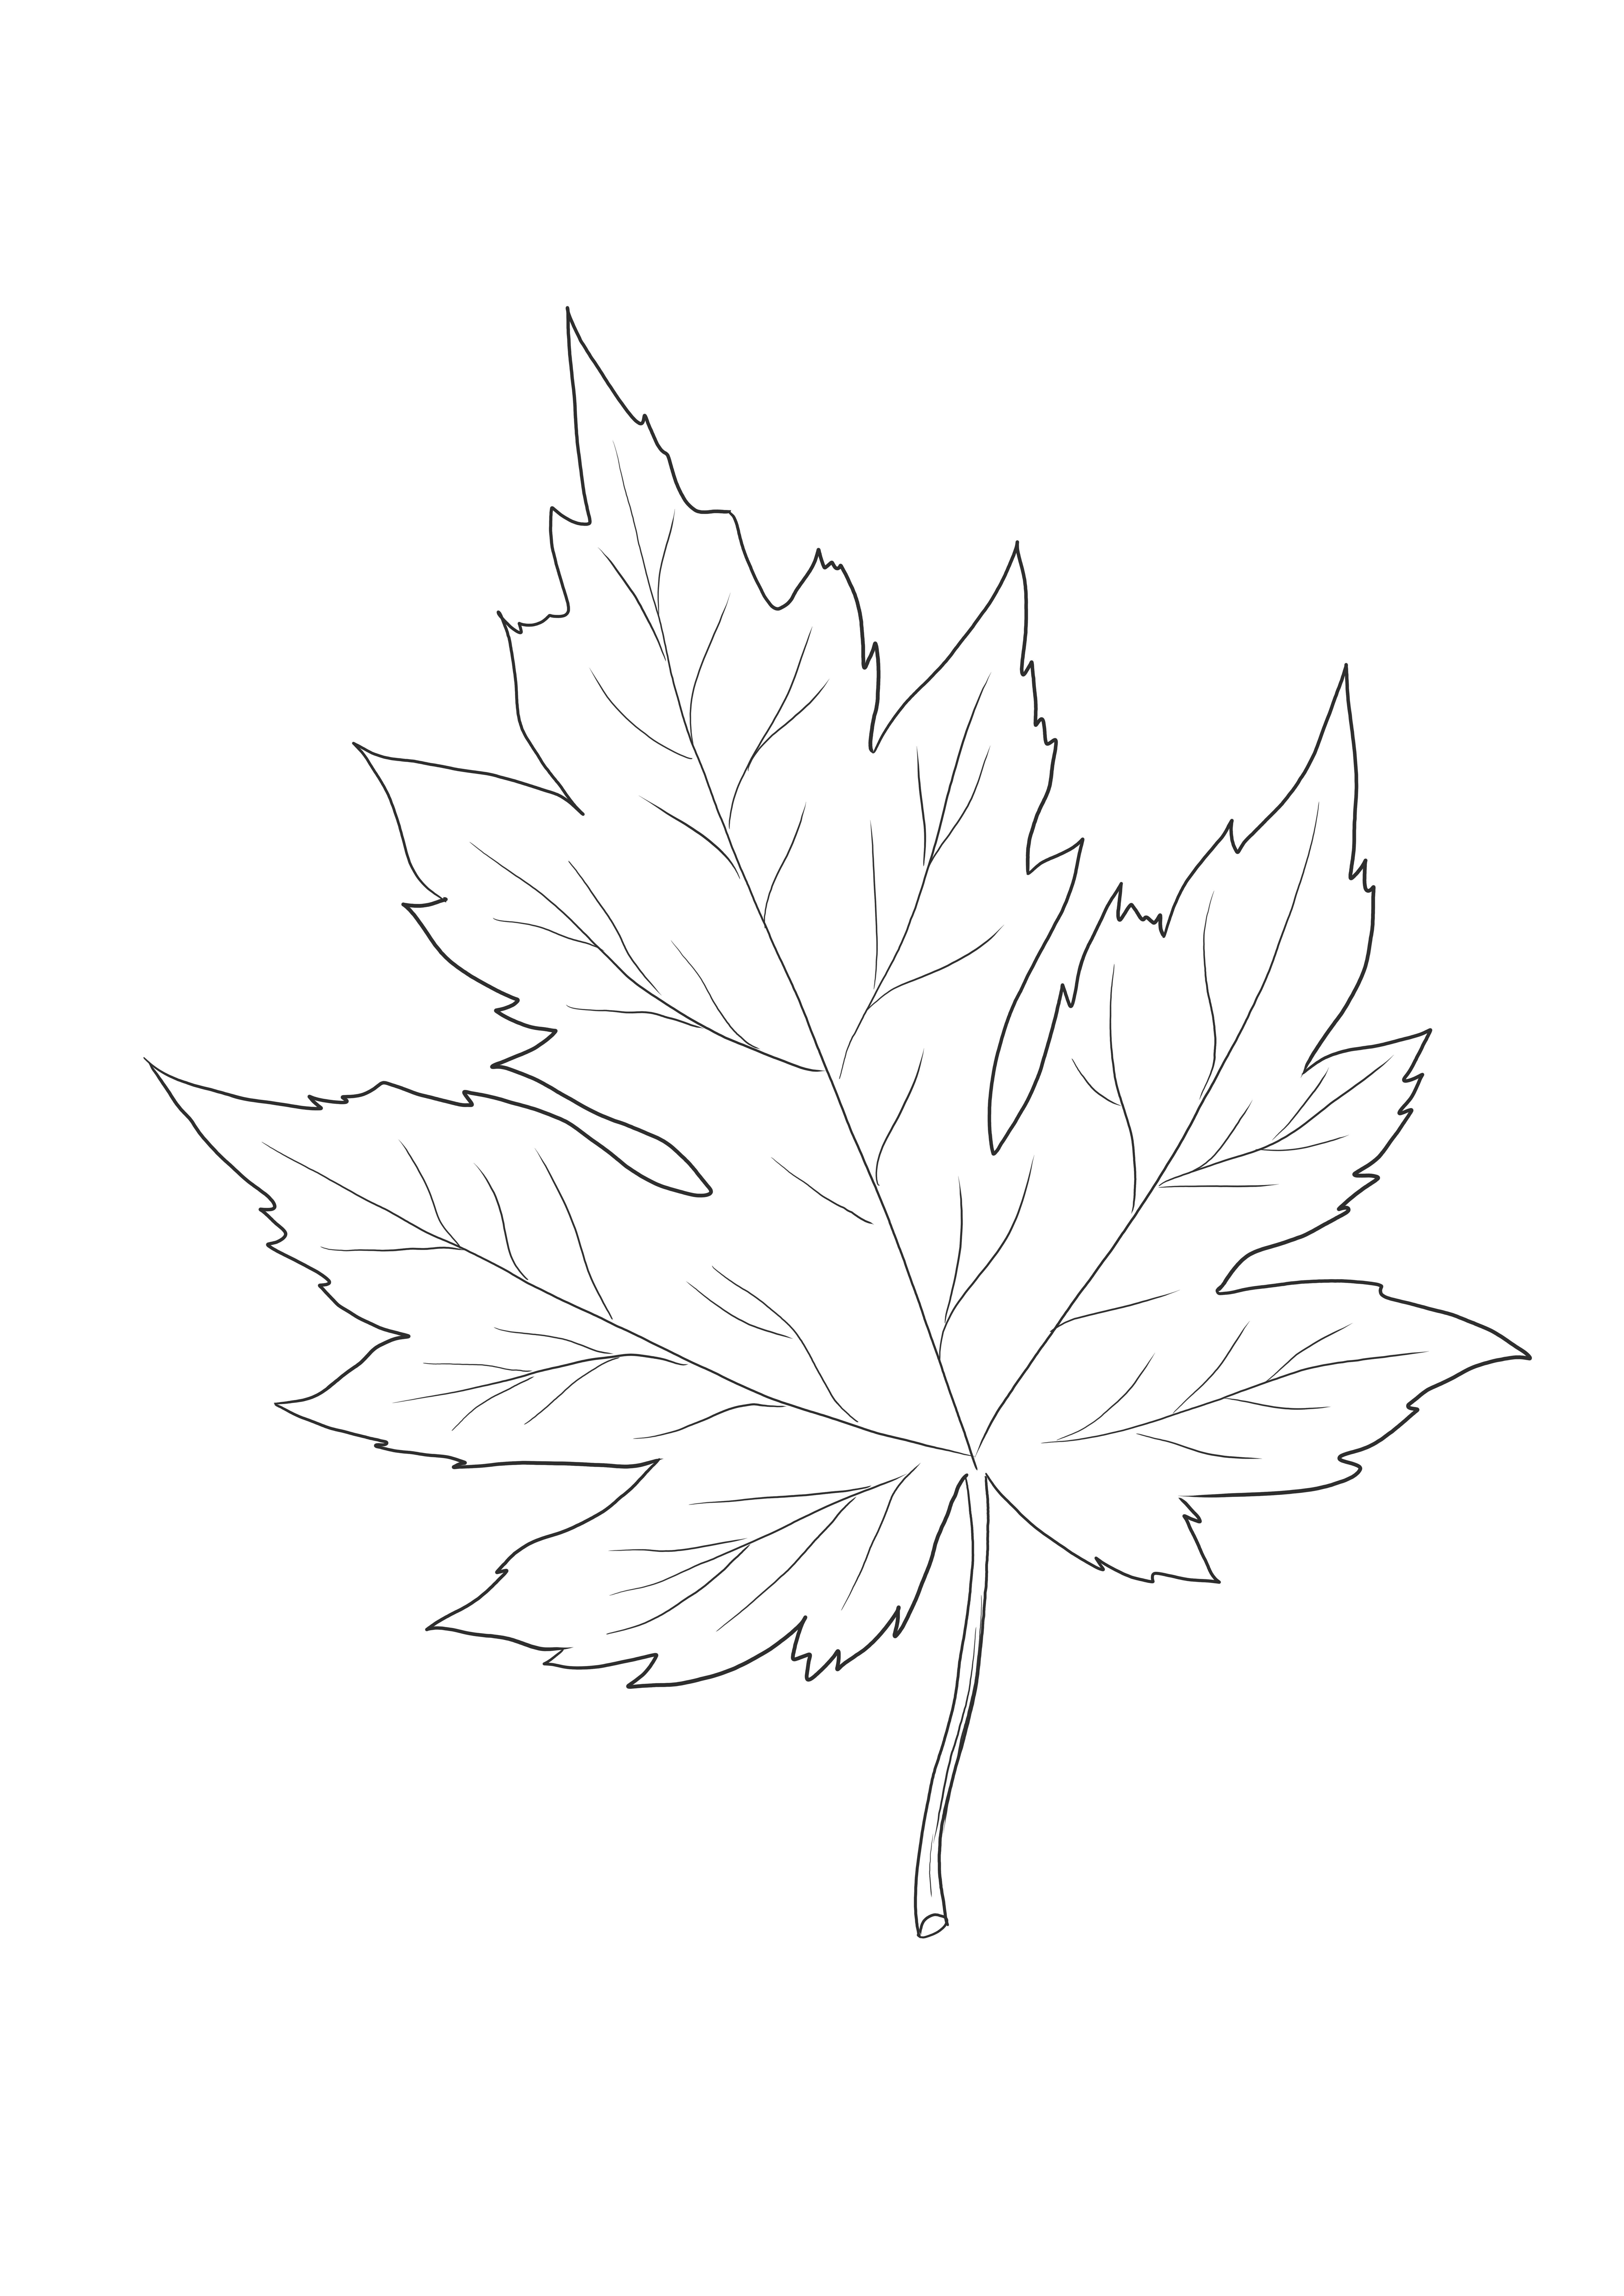 Gambar daun maple yang mudah diwarnai gratis untuk diunduh bagi anak-anak untuk belajar tentang alam